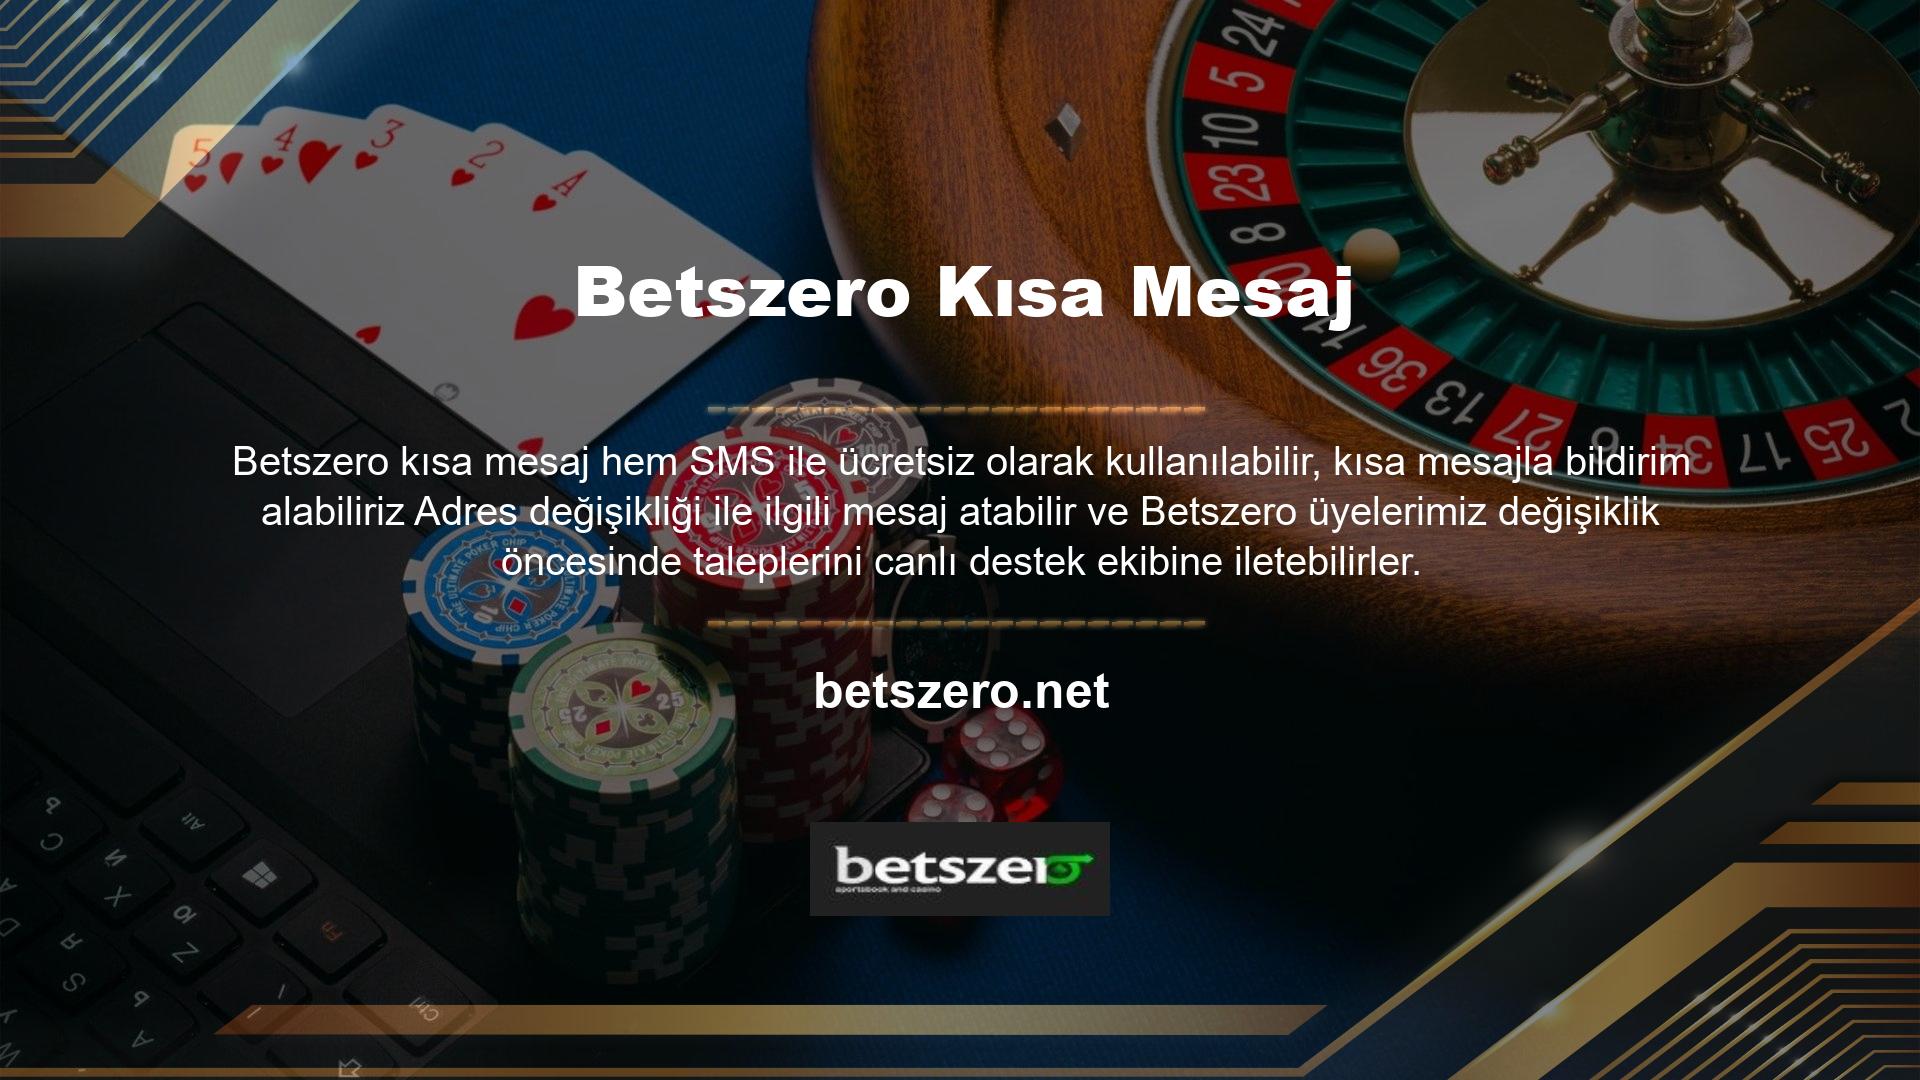 Adres değişikliği nedeniyle casino sitesine erişemeyen Betszero üyeleri BTK yaptırımlarından etkilenmez